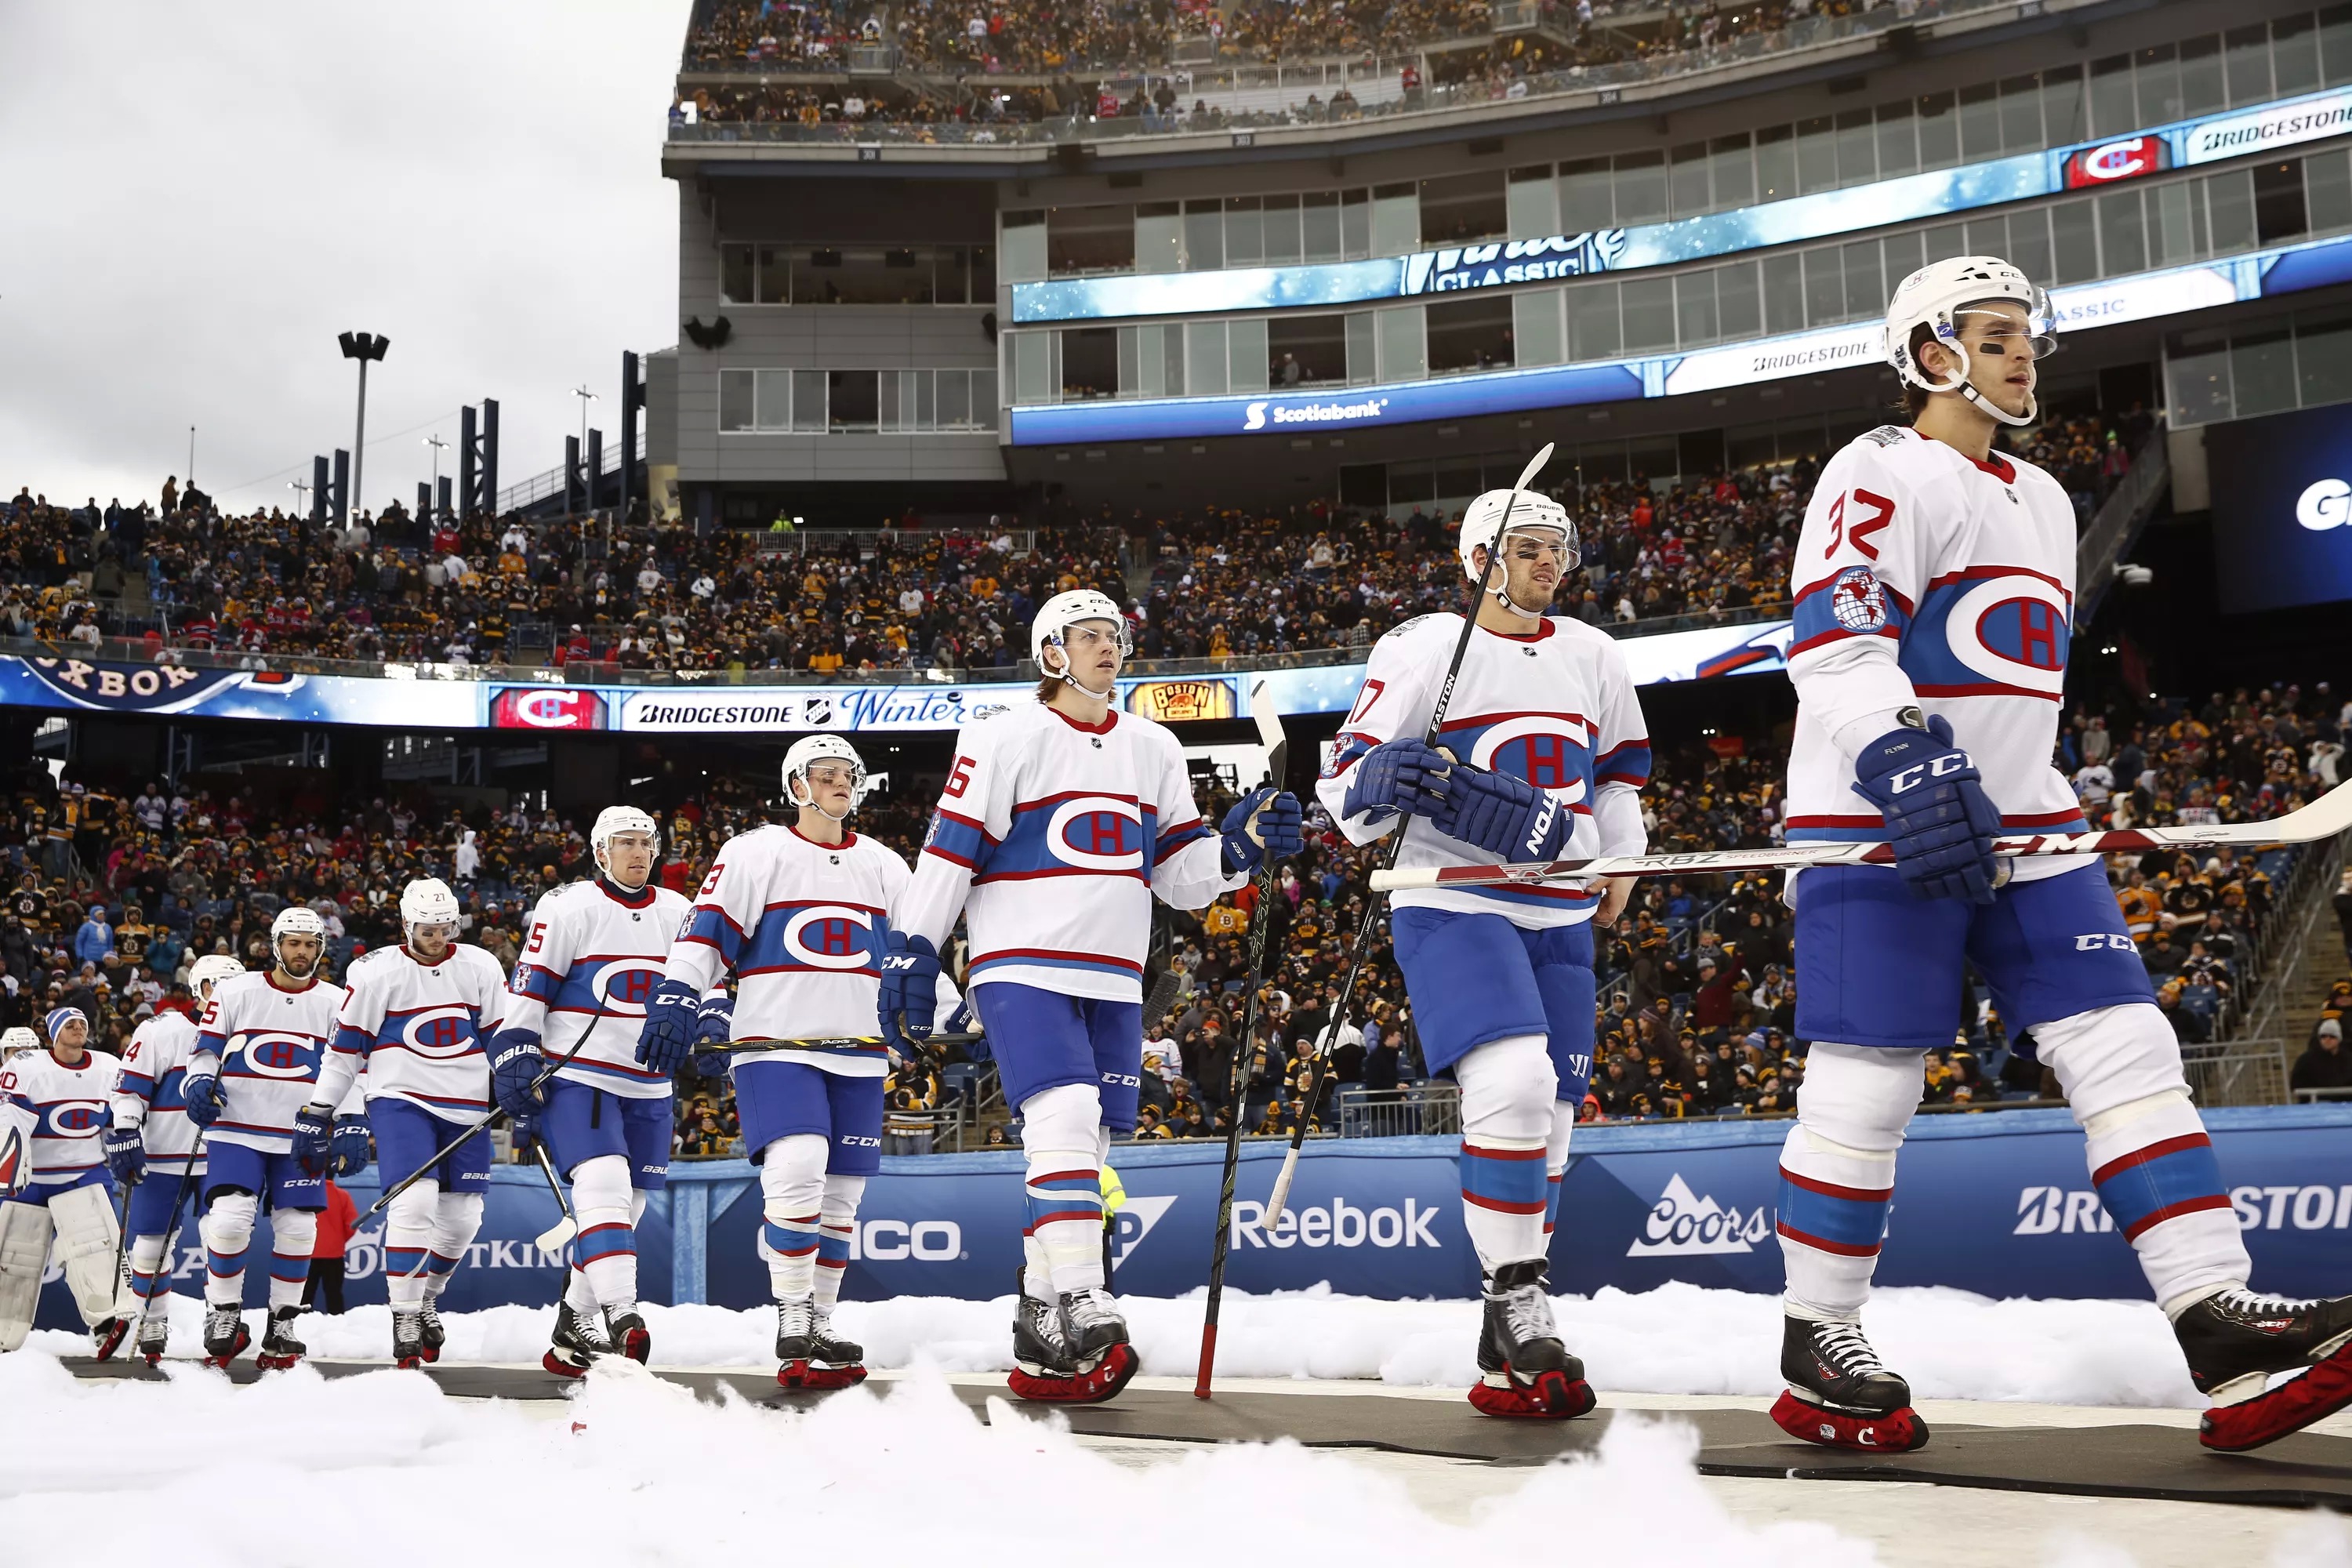 Canadian outdoor hockey in the NHL — dddaniel on Scorum